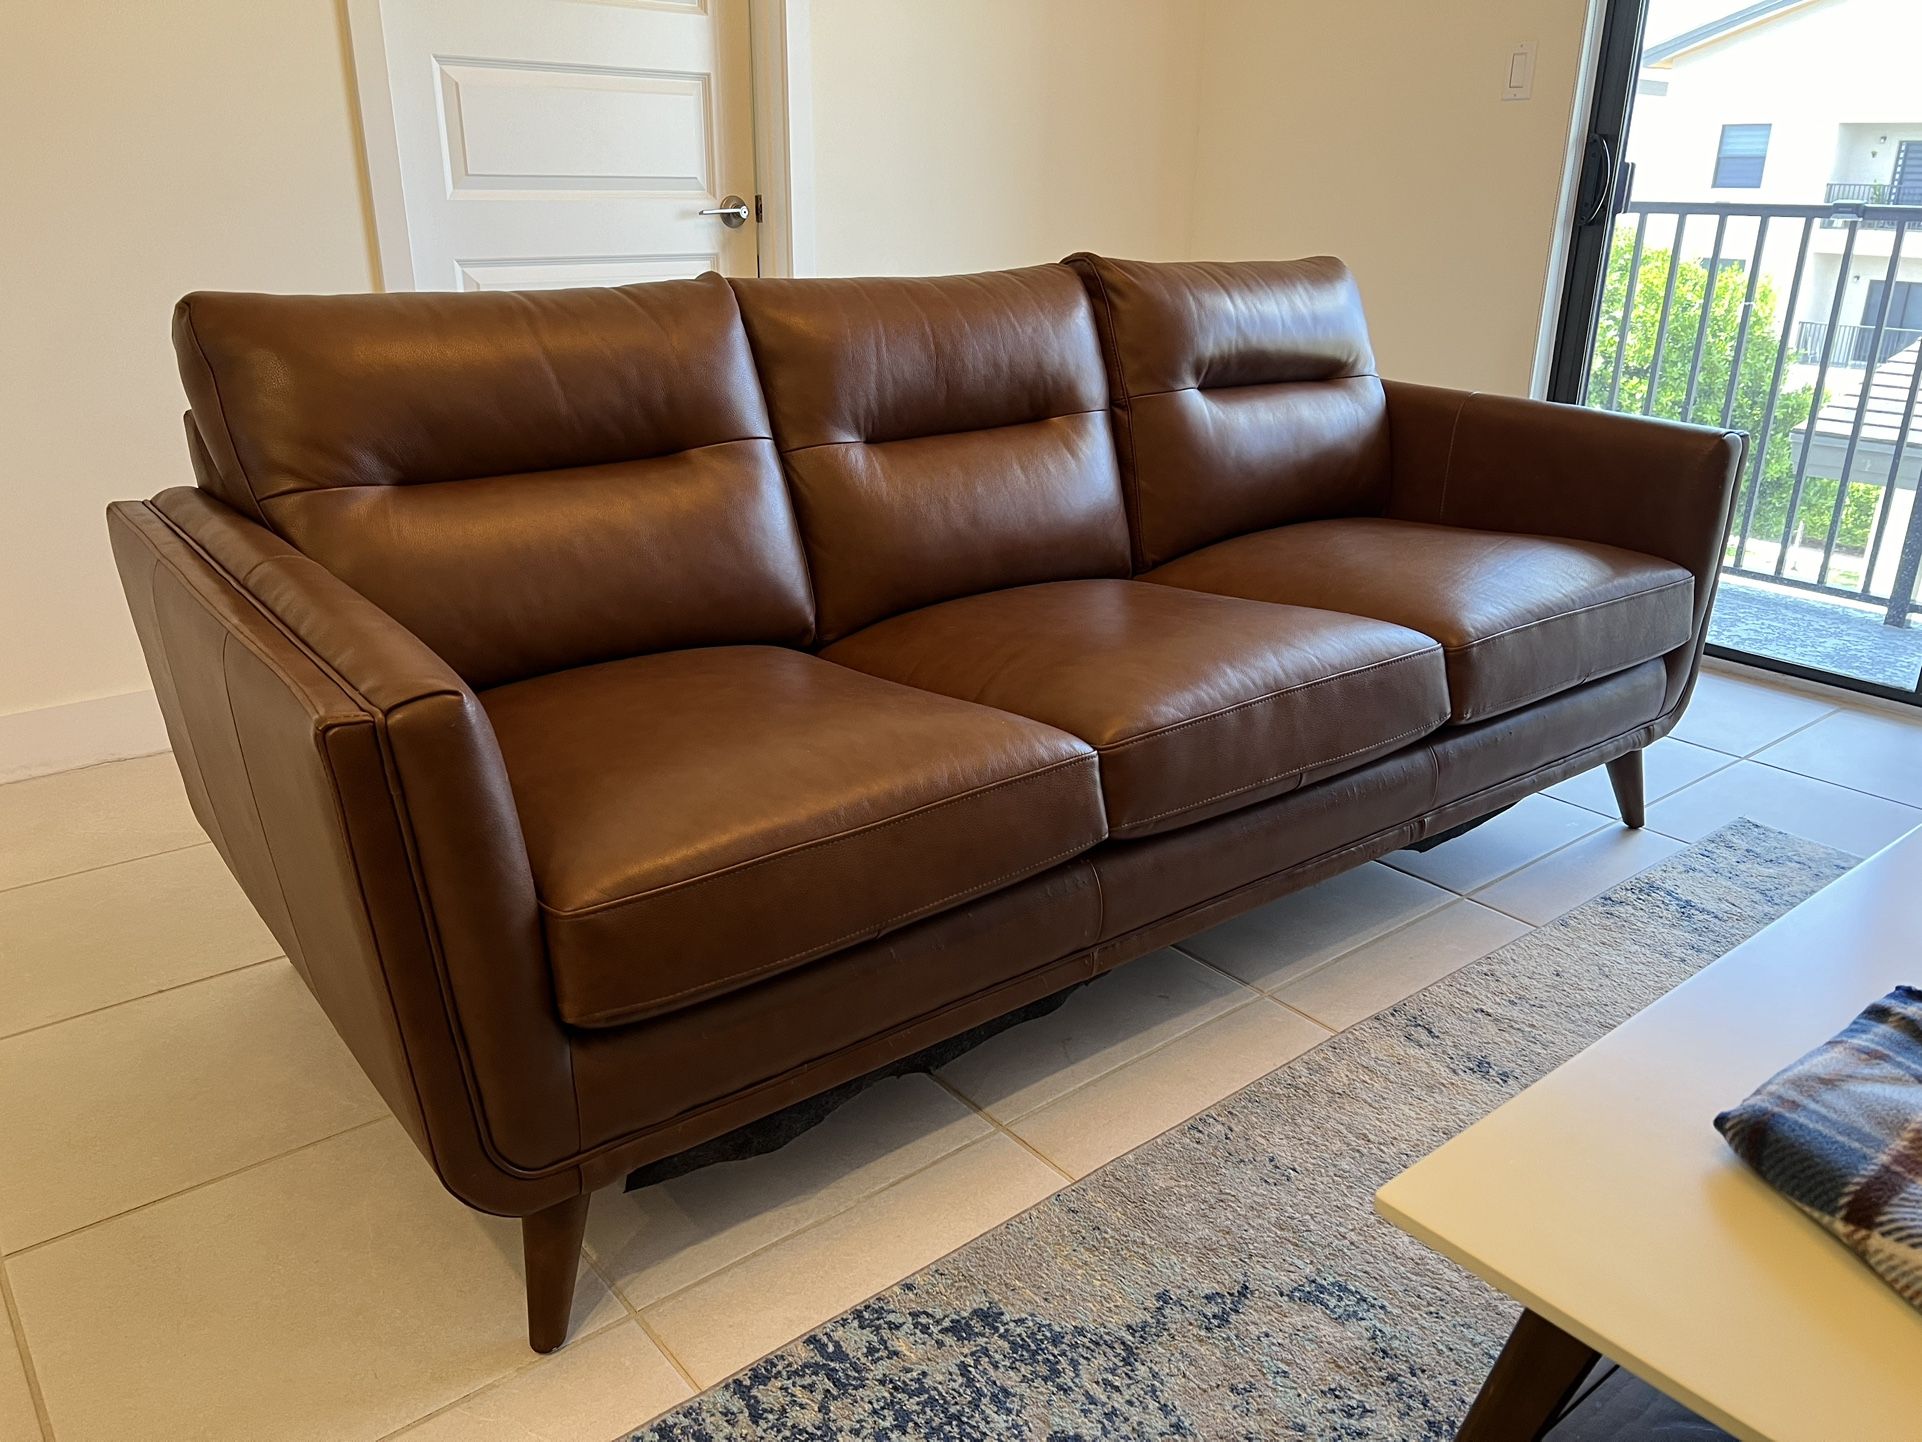 84” Leather Sofa